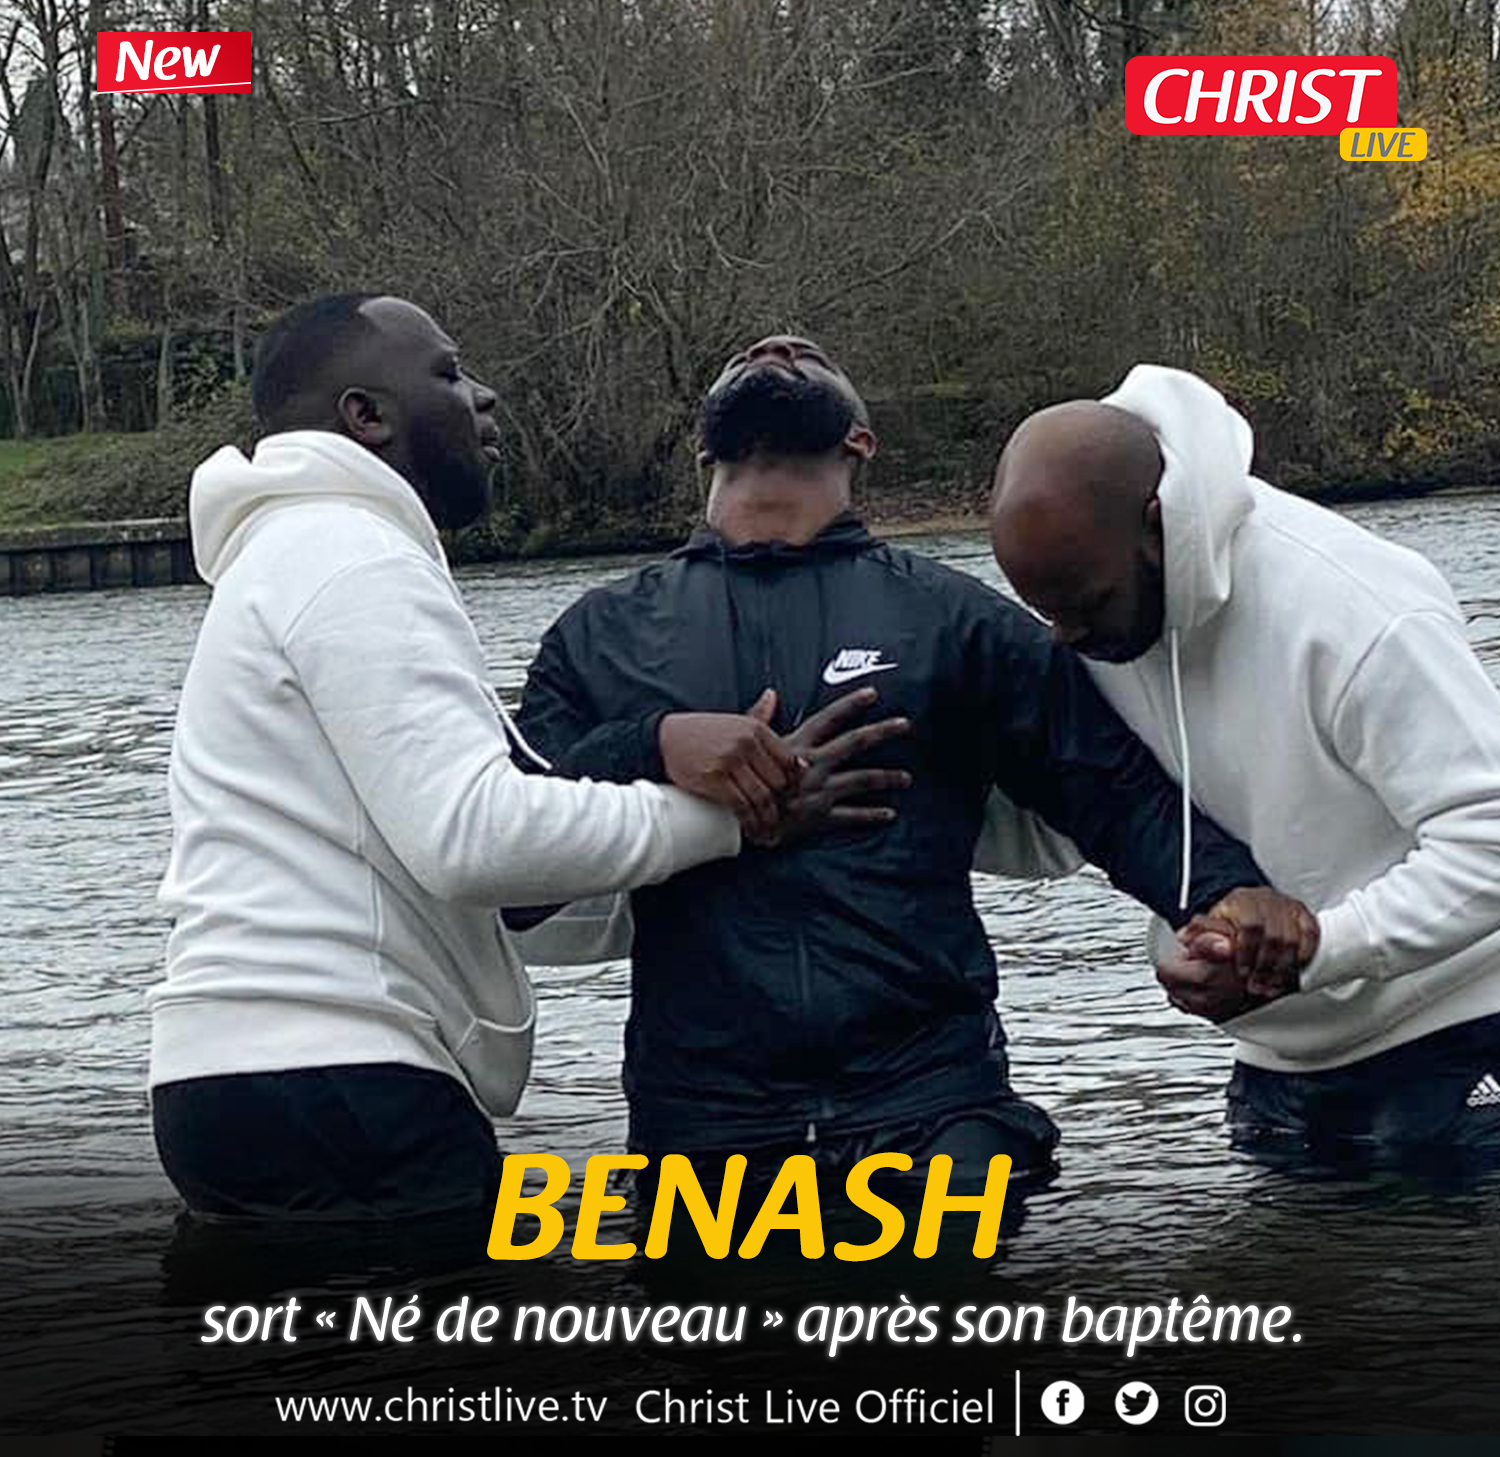 Benash sort « Né de nouveau » après son baptême.